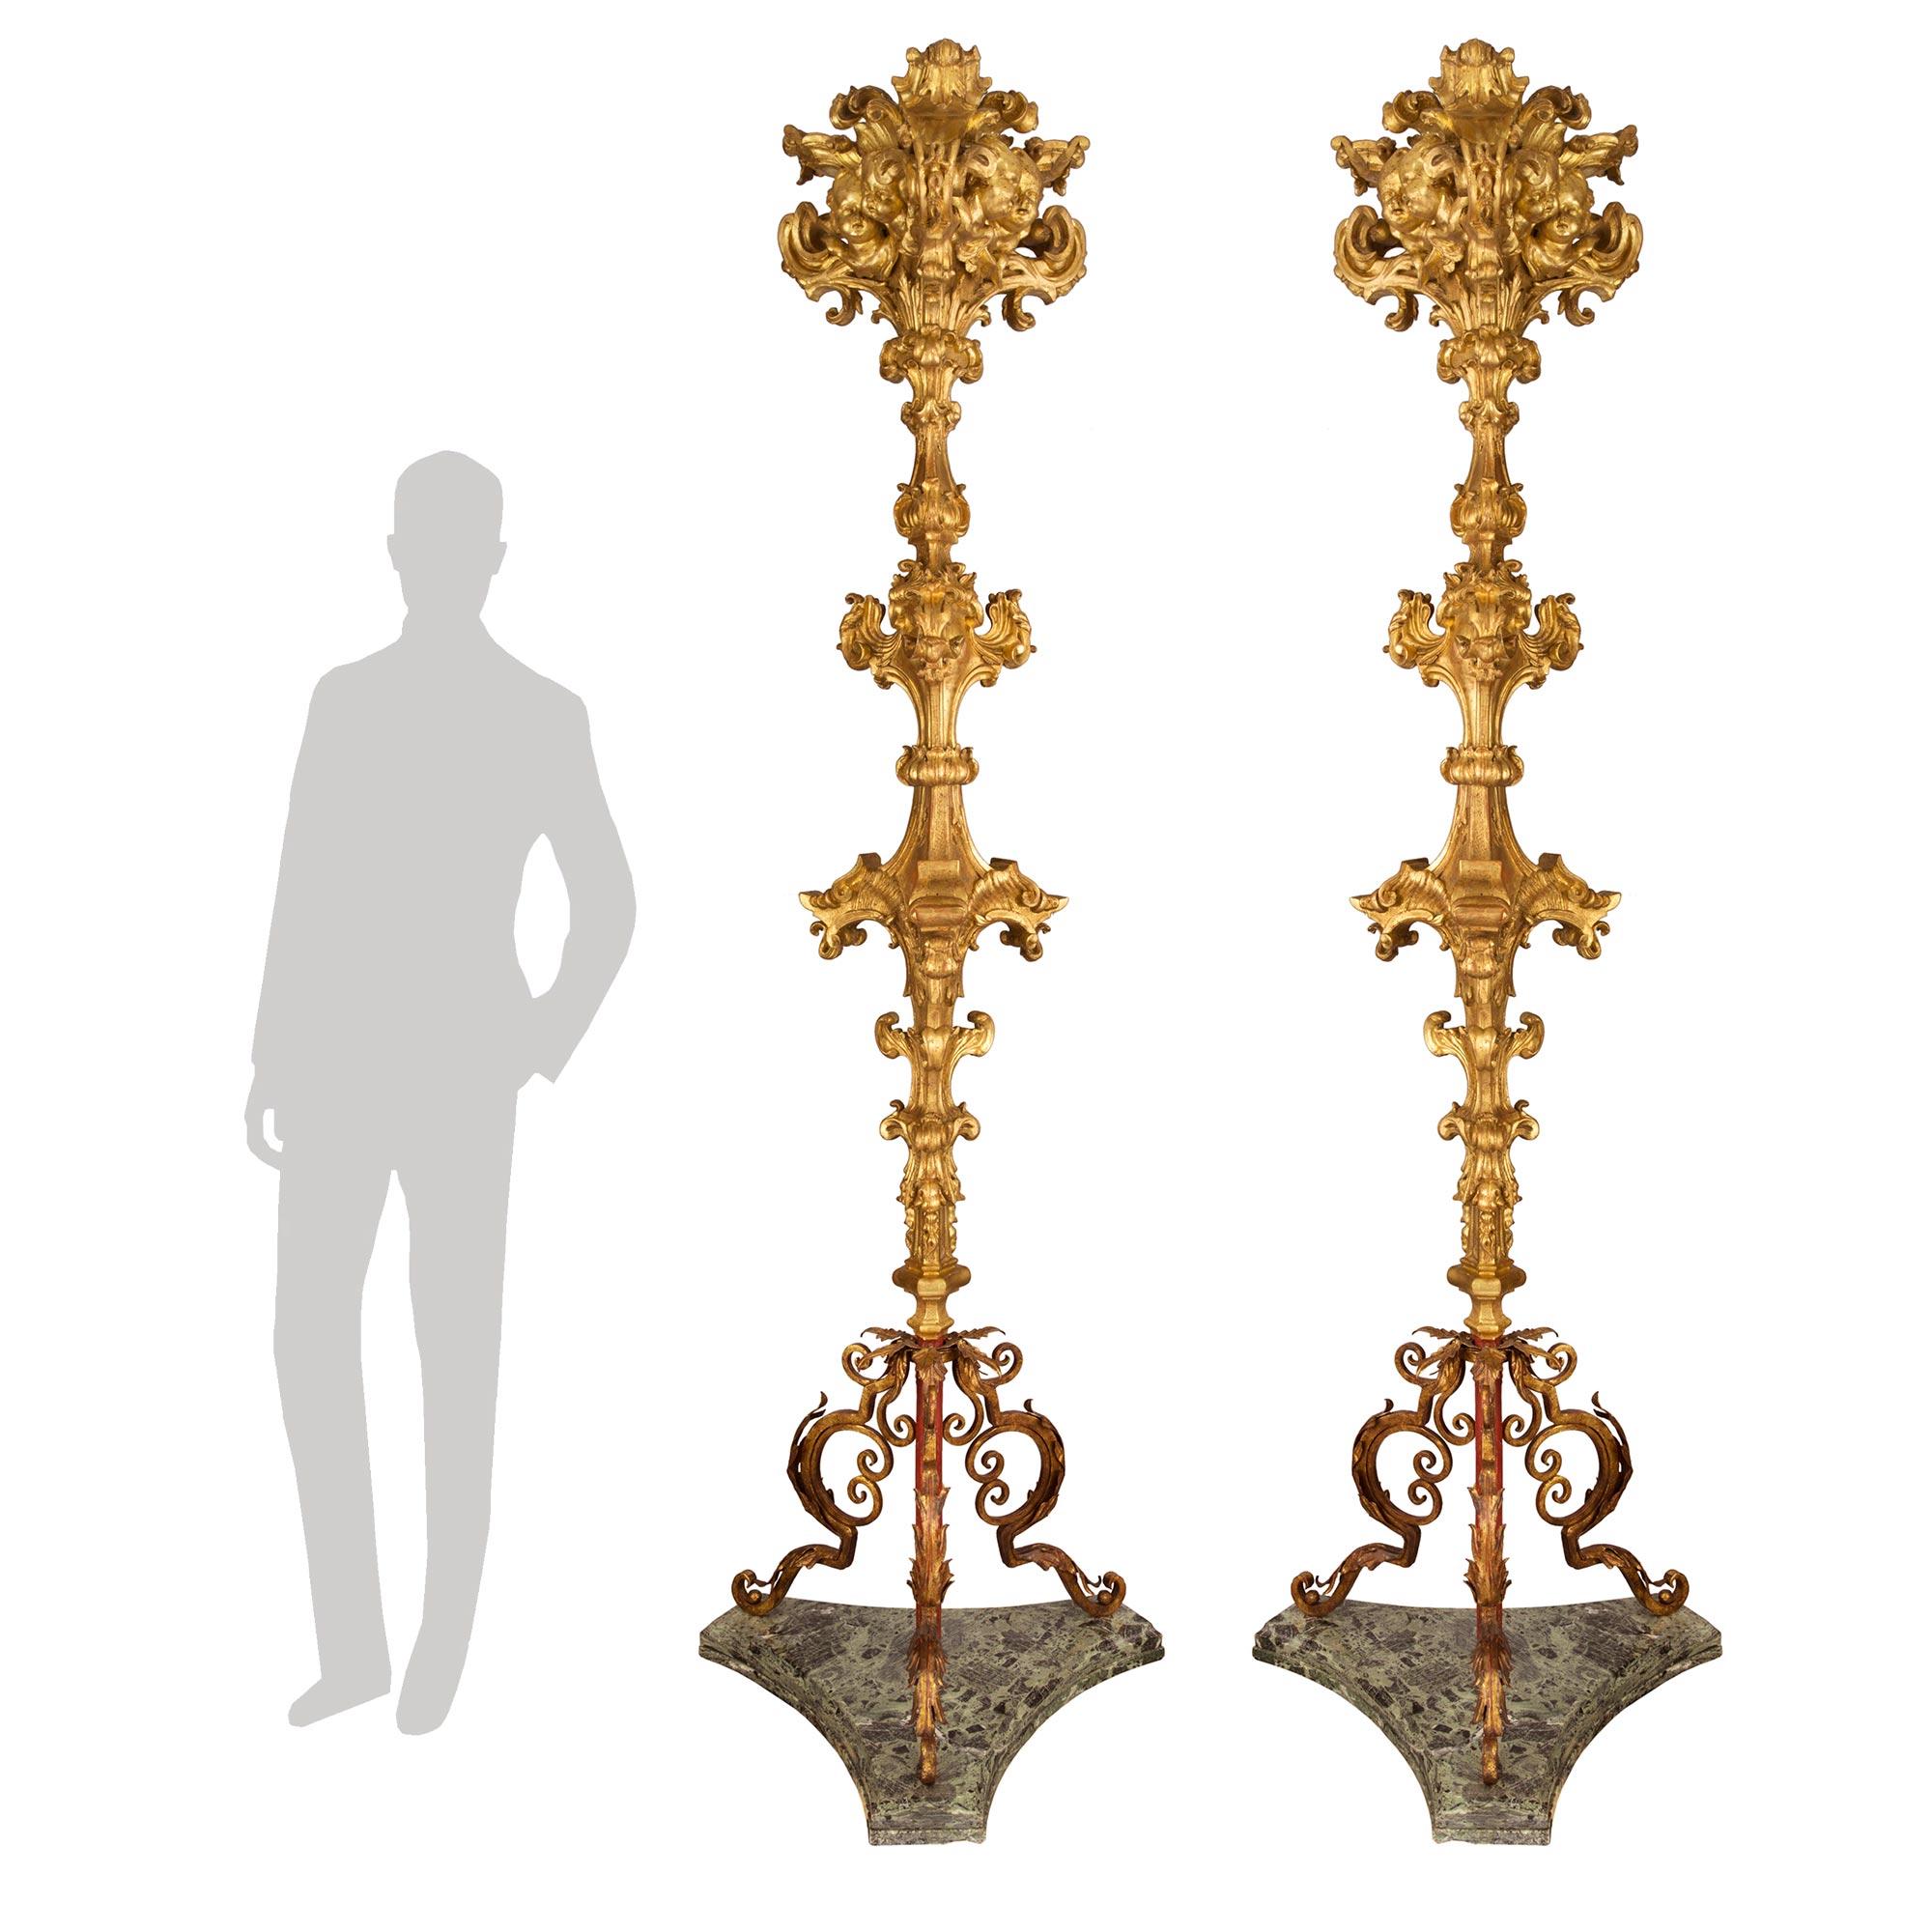 Une paire sensationnelle et rare de lampadaires torchères en bois doré, métal doré et marbre Verde Antico, d'époque baroque du XVIIe siècle. Chaque lampadaire de grande taille est surélevé par des bases triangulaires en marbre Verde Antico du XIXe